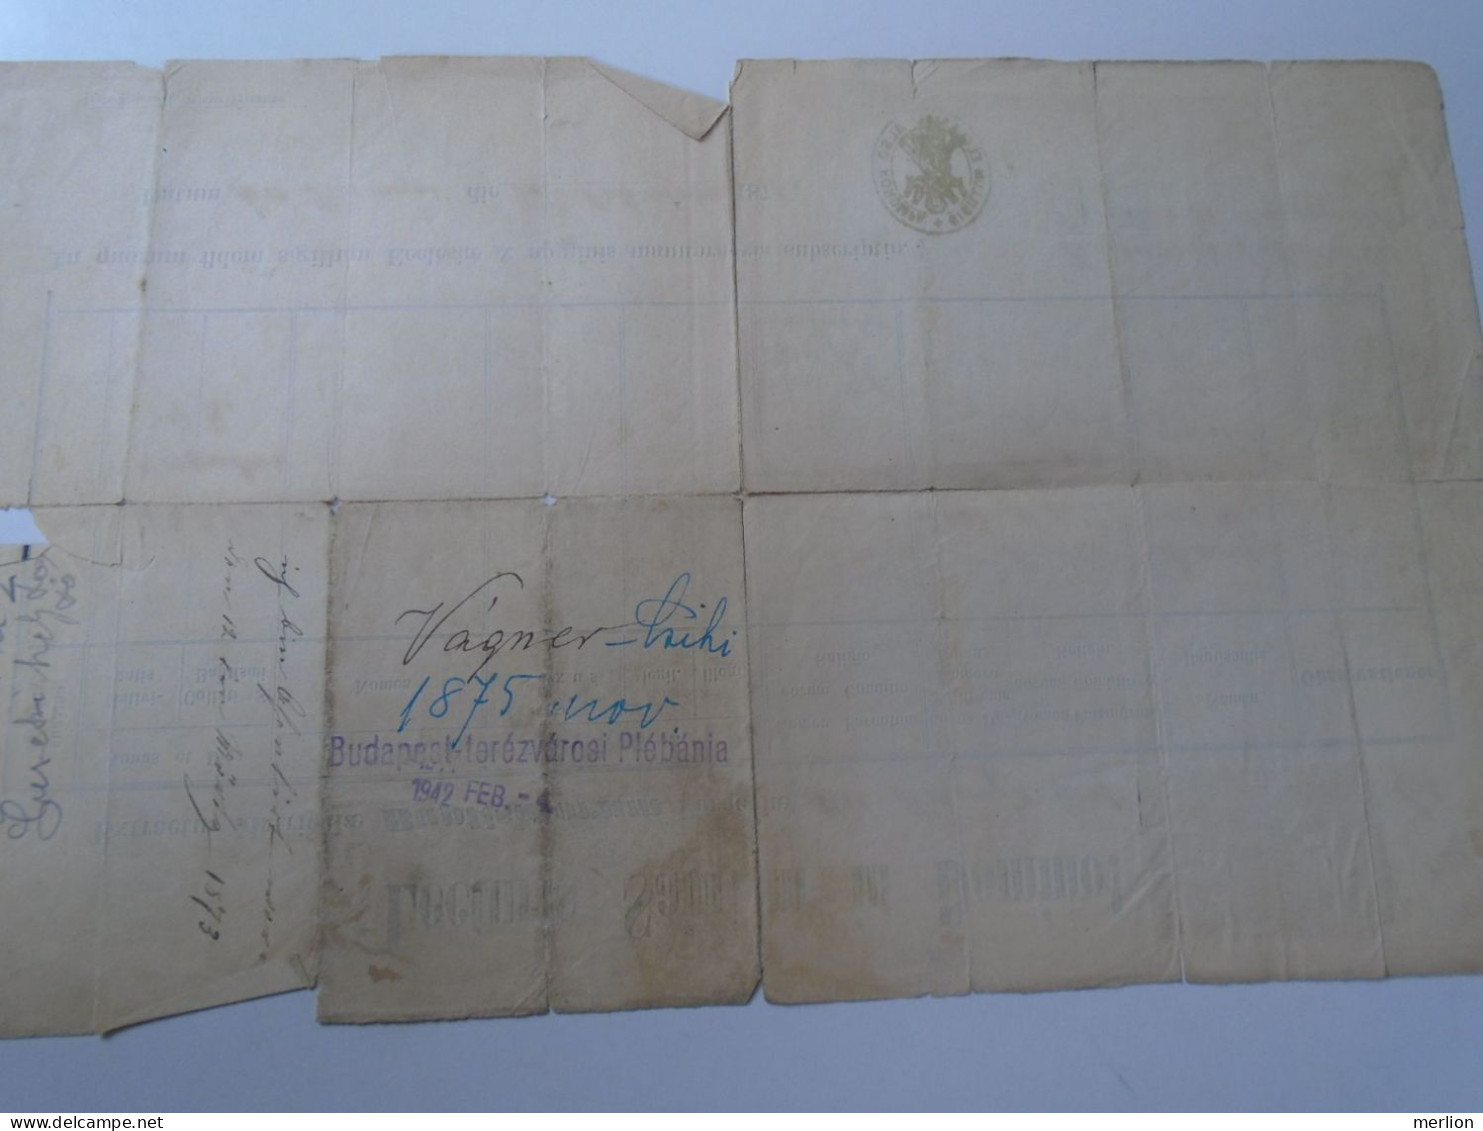 ZA466.14  Old document  -Slovakia  Alsókorompa - Dolná Krupá - 1871  Andreas Wagner, Vágner, Stettina, Jaloveczky